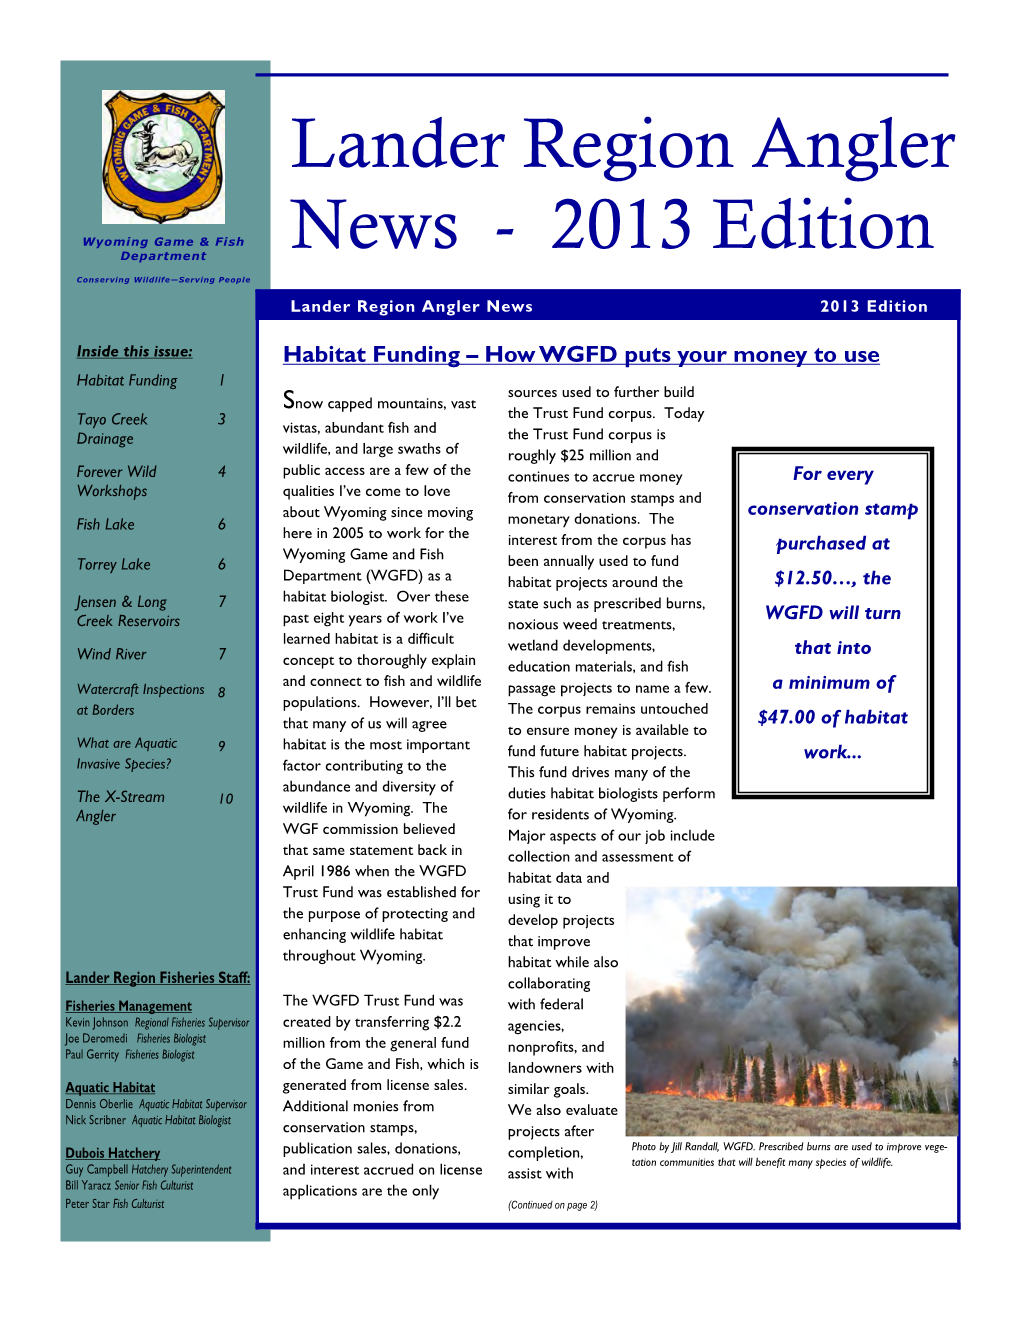 Lander Region Angler News 2013 Edition